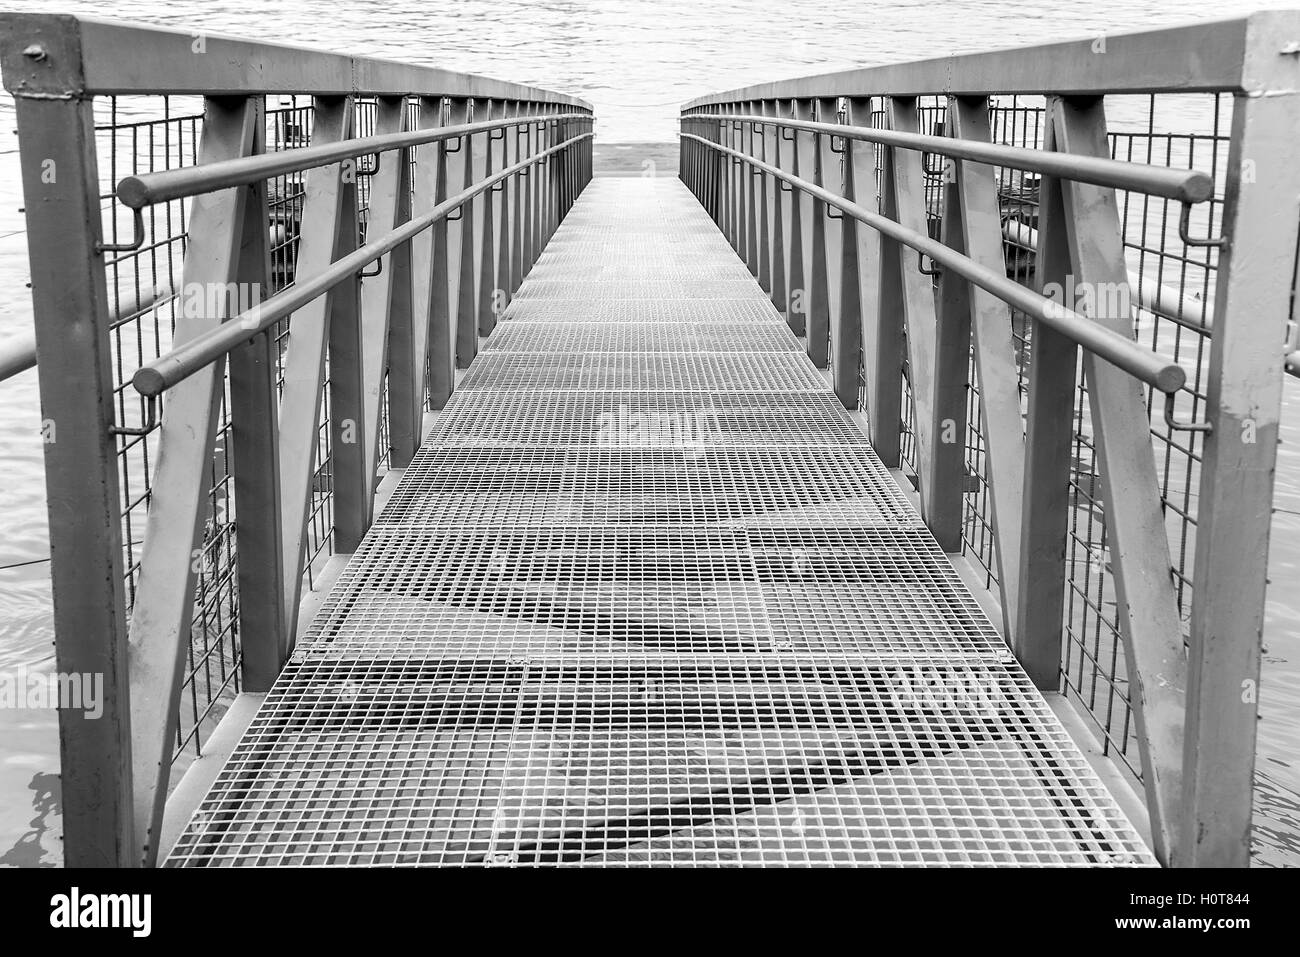 Bridge or pier built of steel structures. Stock Photo